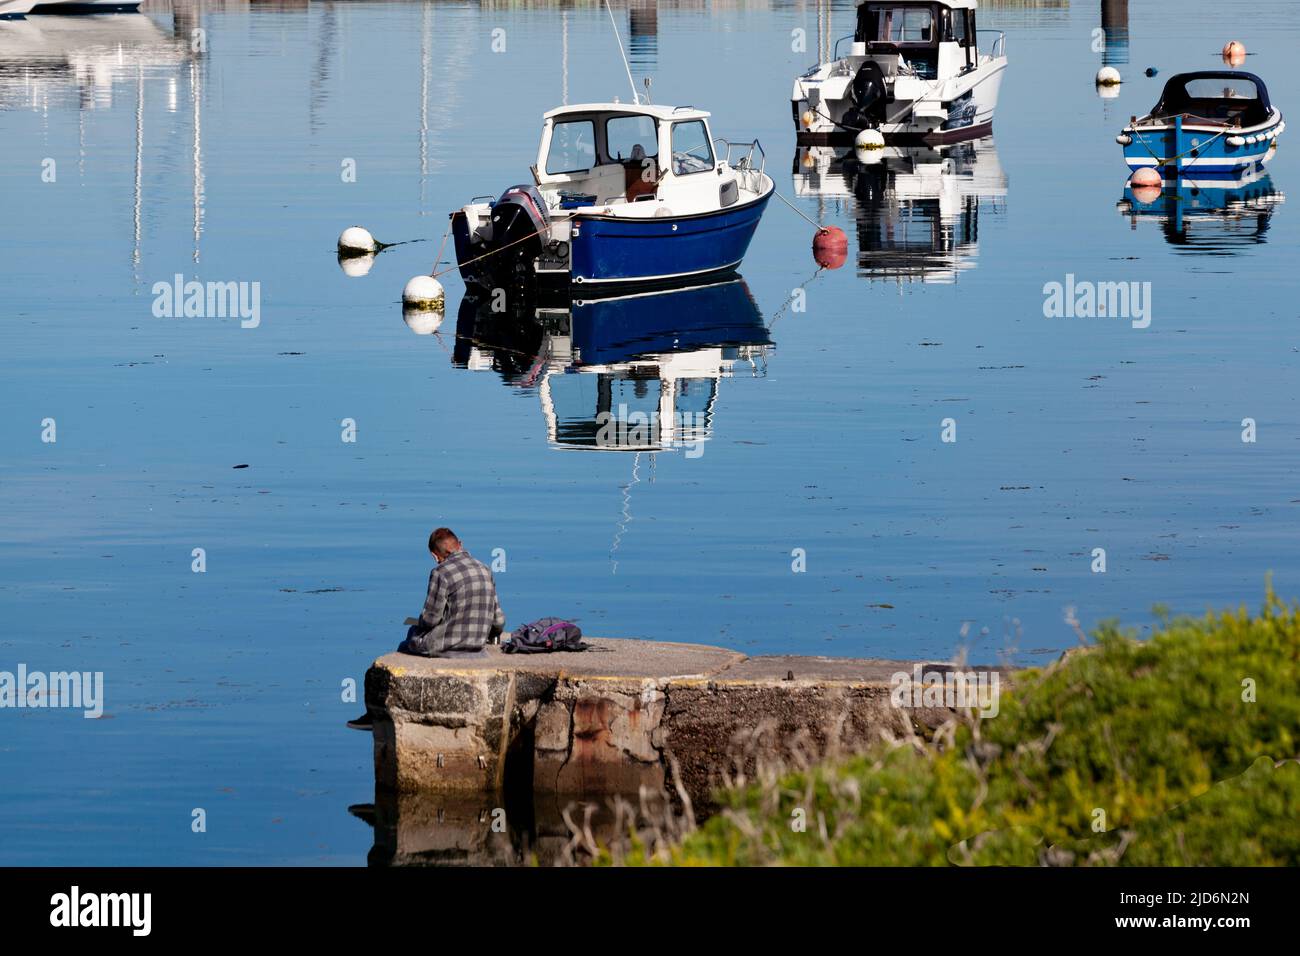 Reflexión tranquila. Un hombre sentado en un puerto con un ambiente reflexivo, con barcos que proyectan reflejos en un mar como espejo en una mañana soleada y luminosa Foto de stock